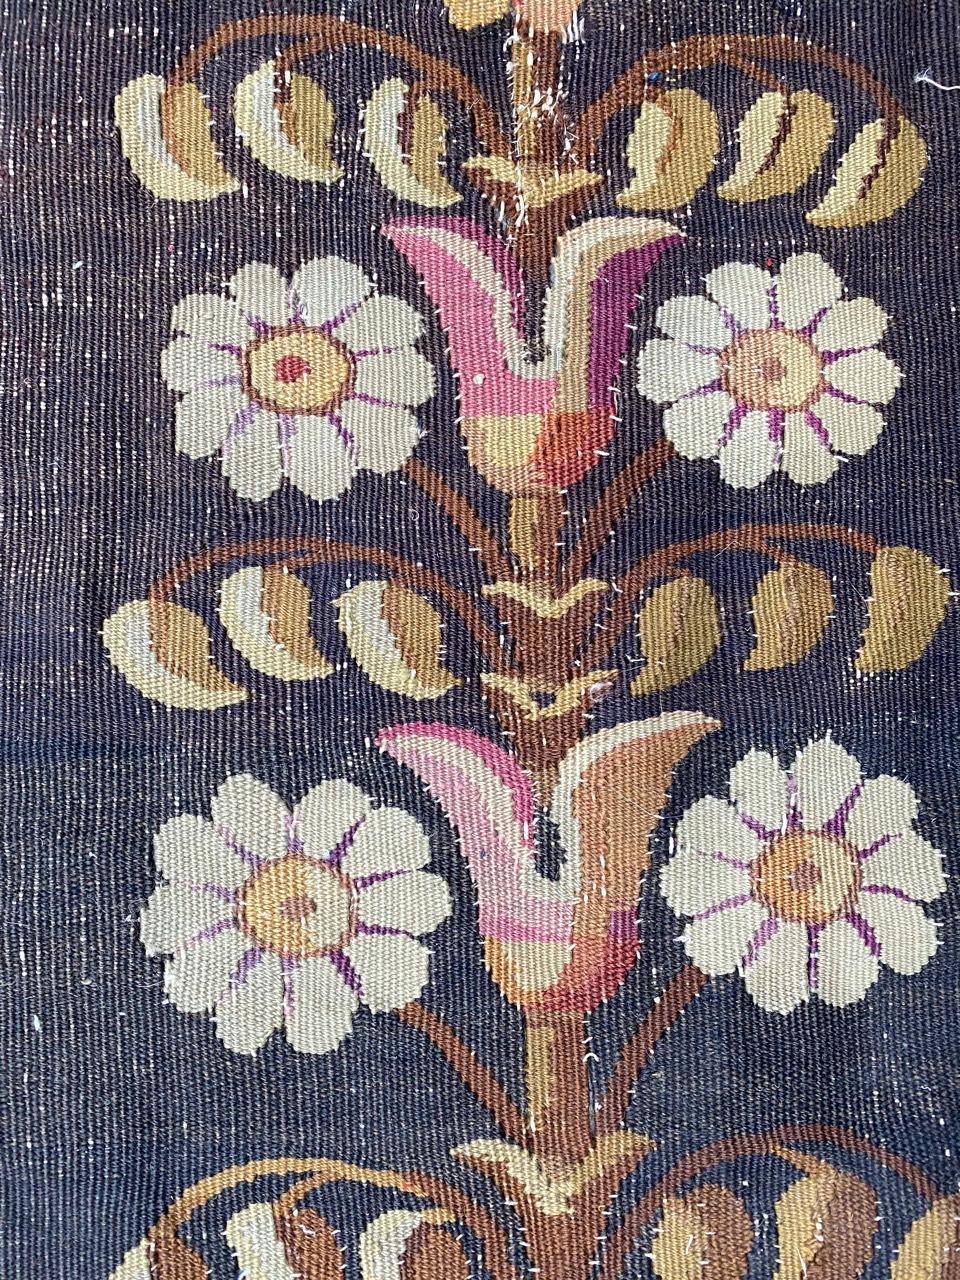 Wunderschönes Fragment einer französischen Aubusson-Tapisserie aus dem 19. Jahrhundert, das ursprünglich von einer Bordüre eines Aubusson-Teppichs oder einer Tapisserie stammt, die vollständig mit Wolle auf Baumwollgrund gewebt wurde.